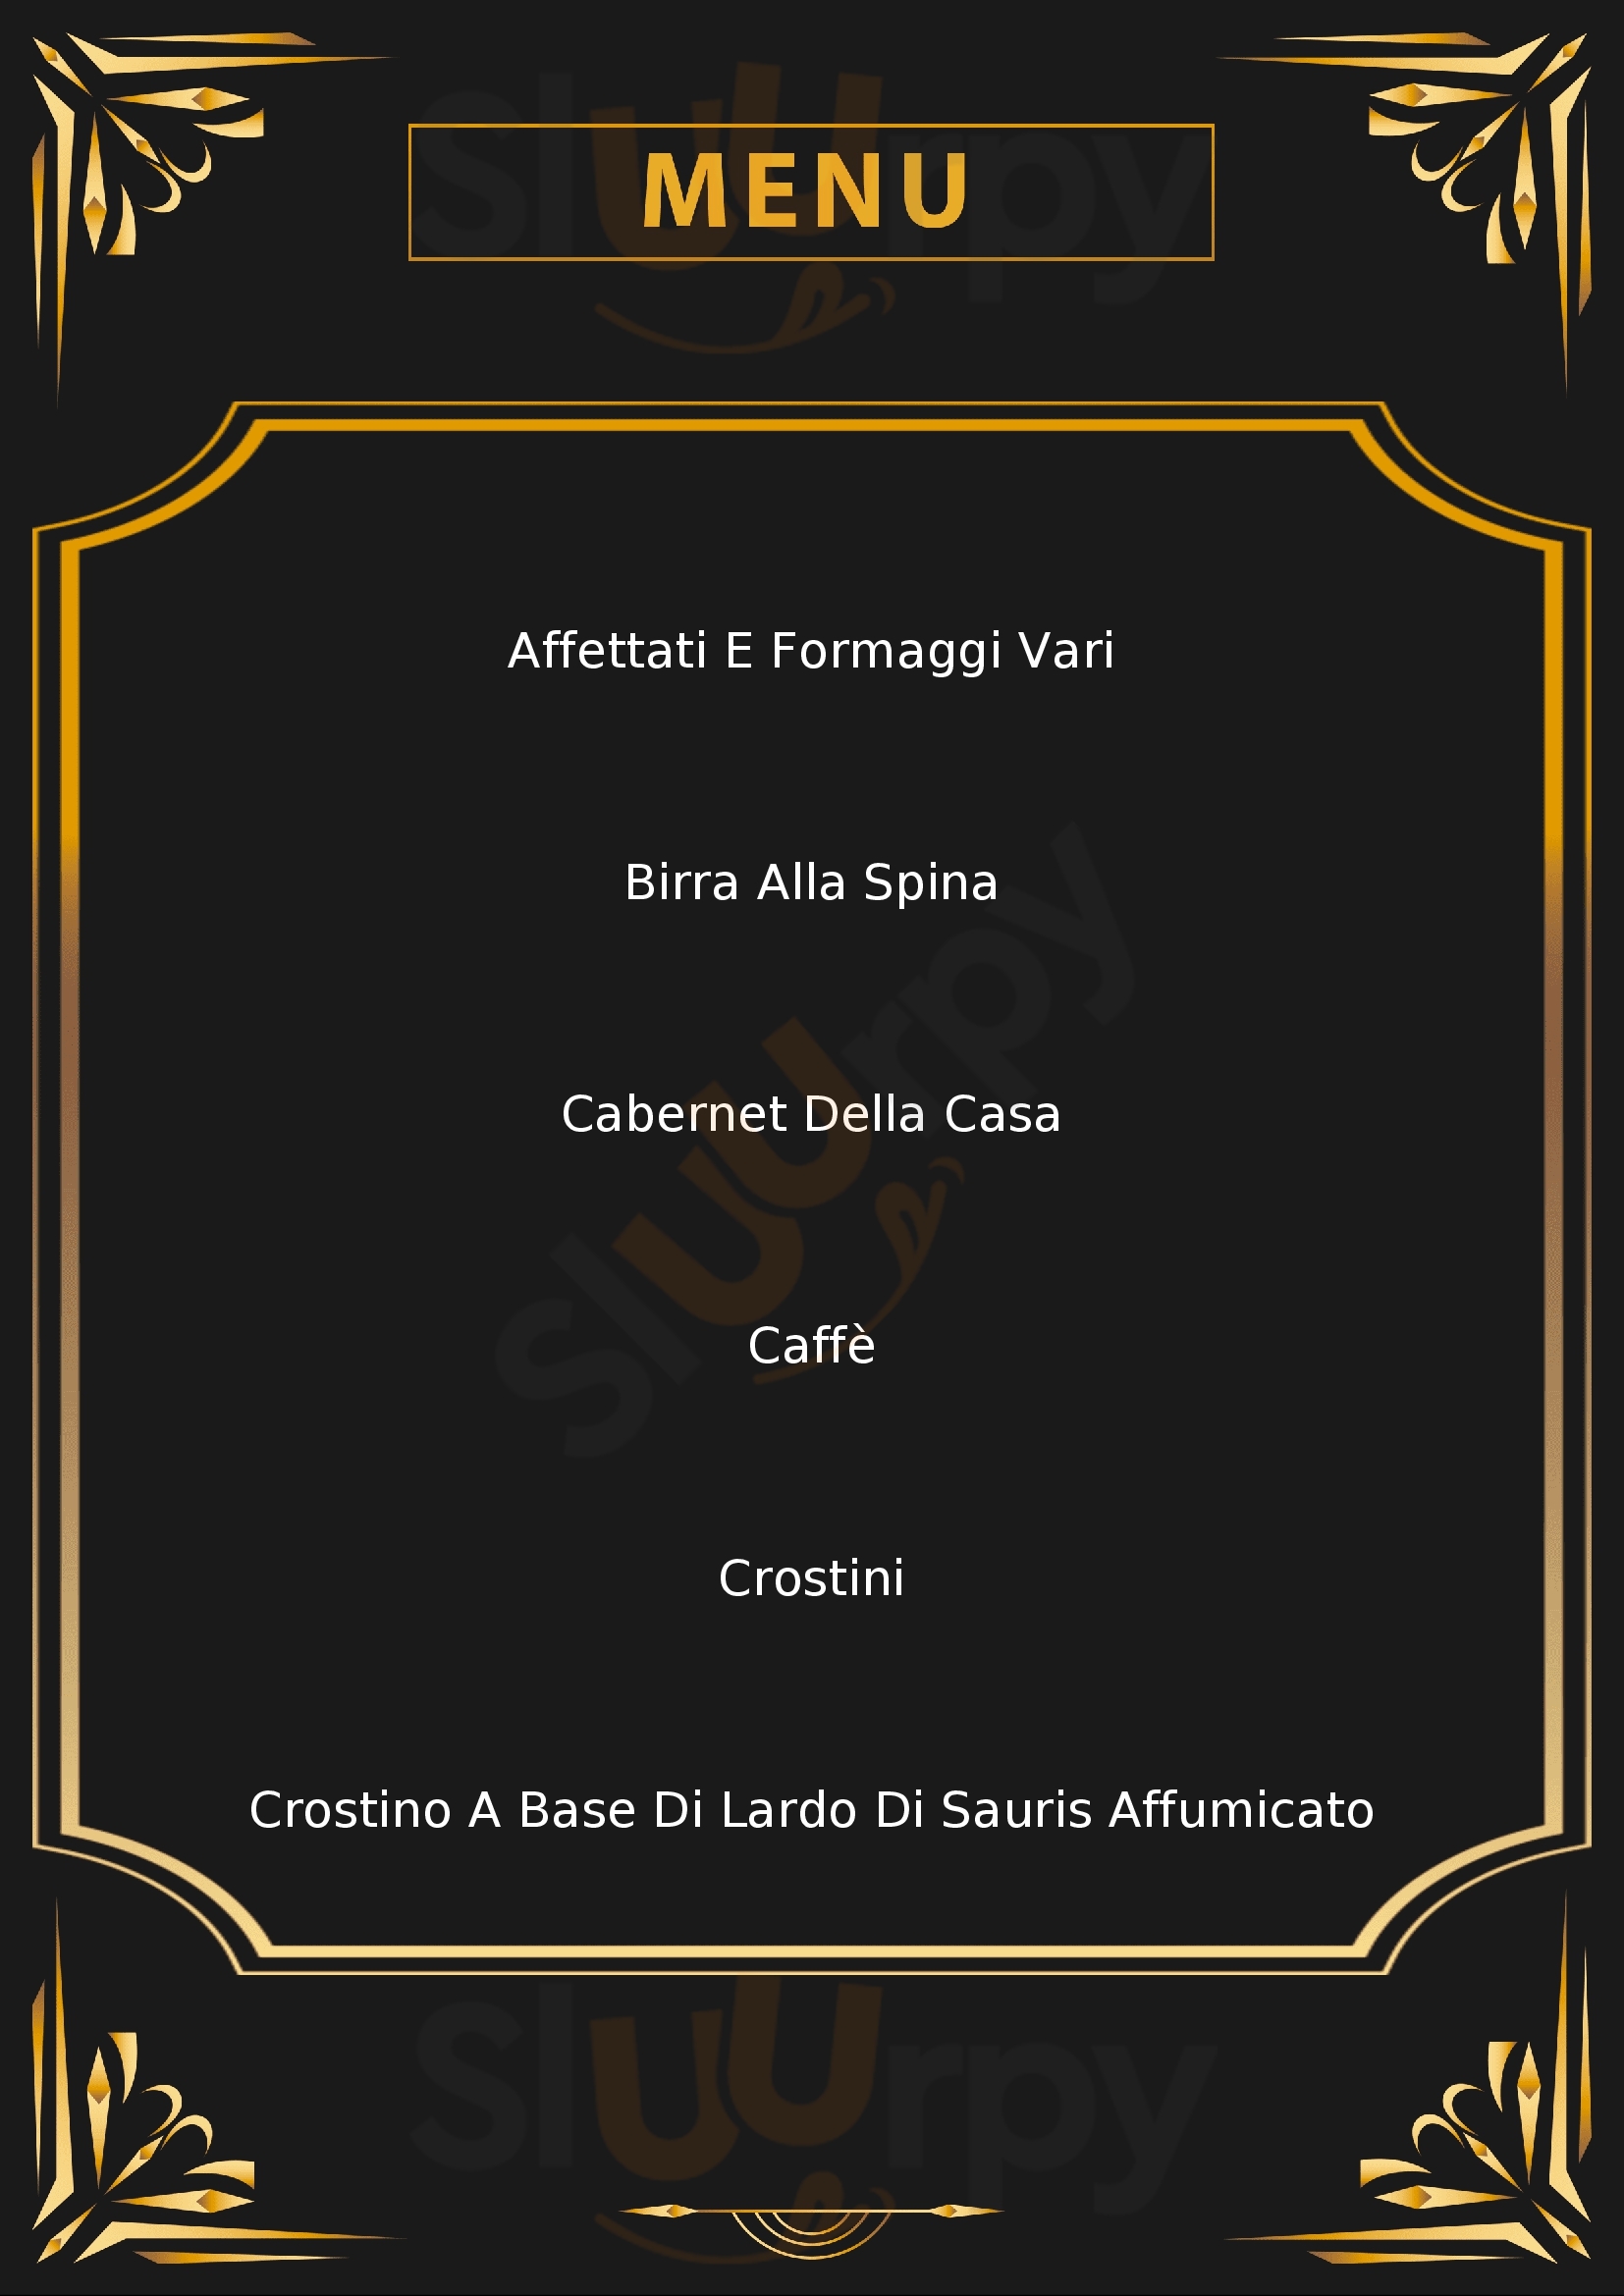 Osteria al Castelu Montereale Valcellina menù 1 pagina